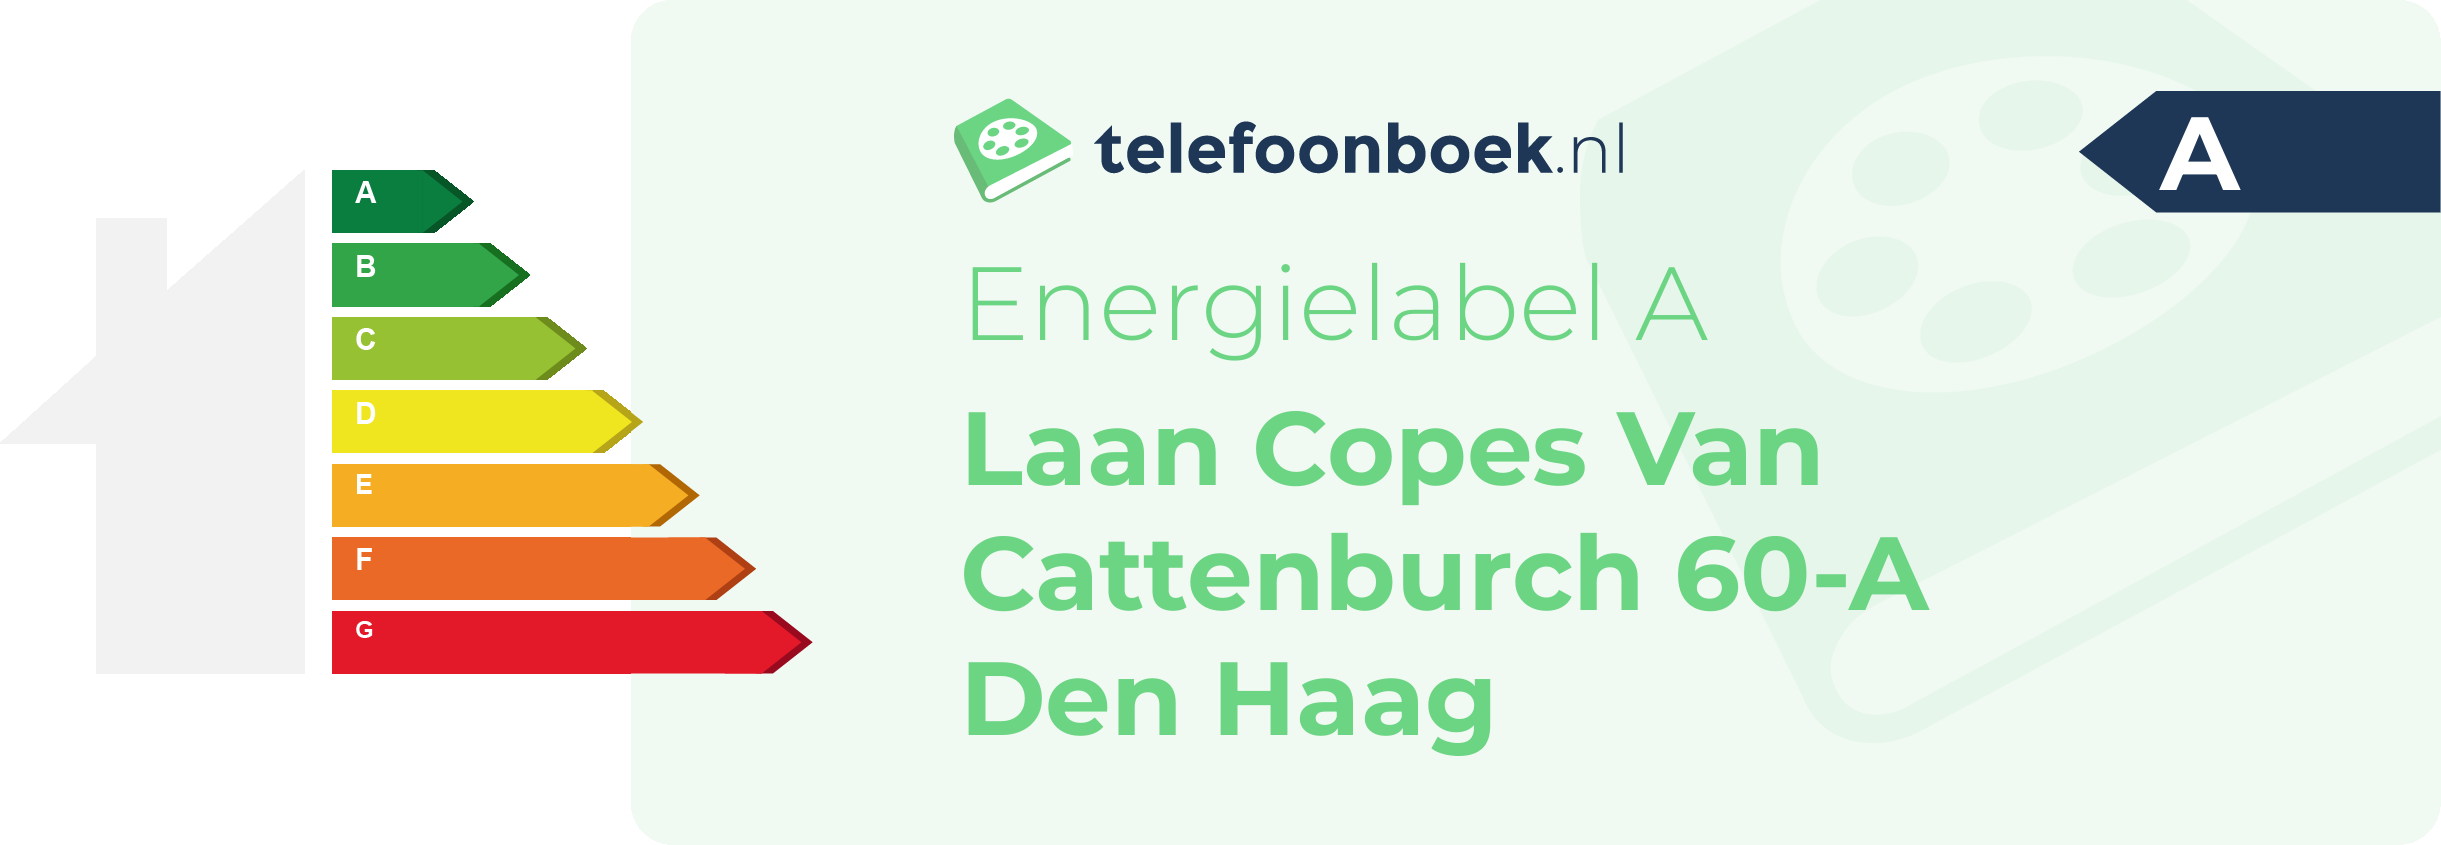 Energielabel Laan Copes Van Cattenburch 60-A Den Haag